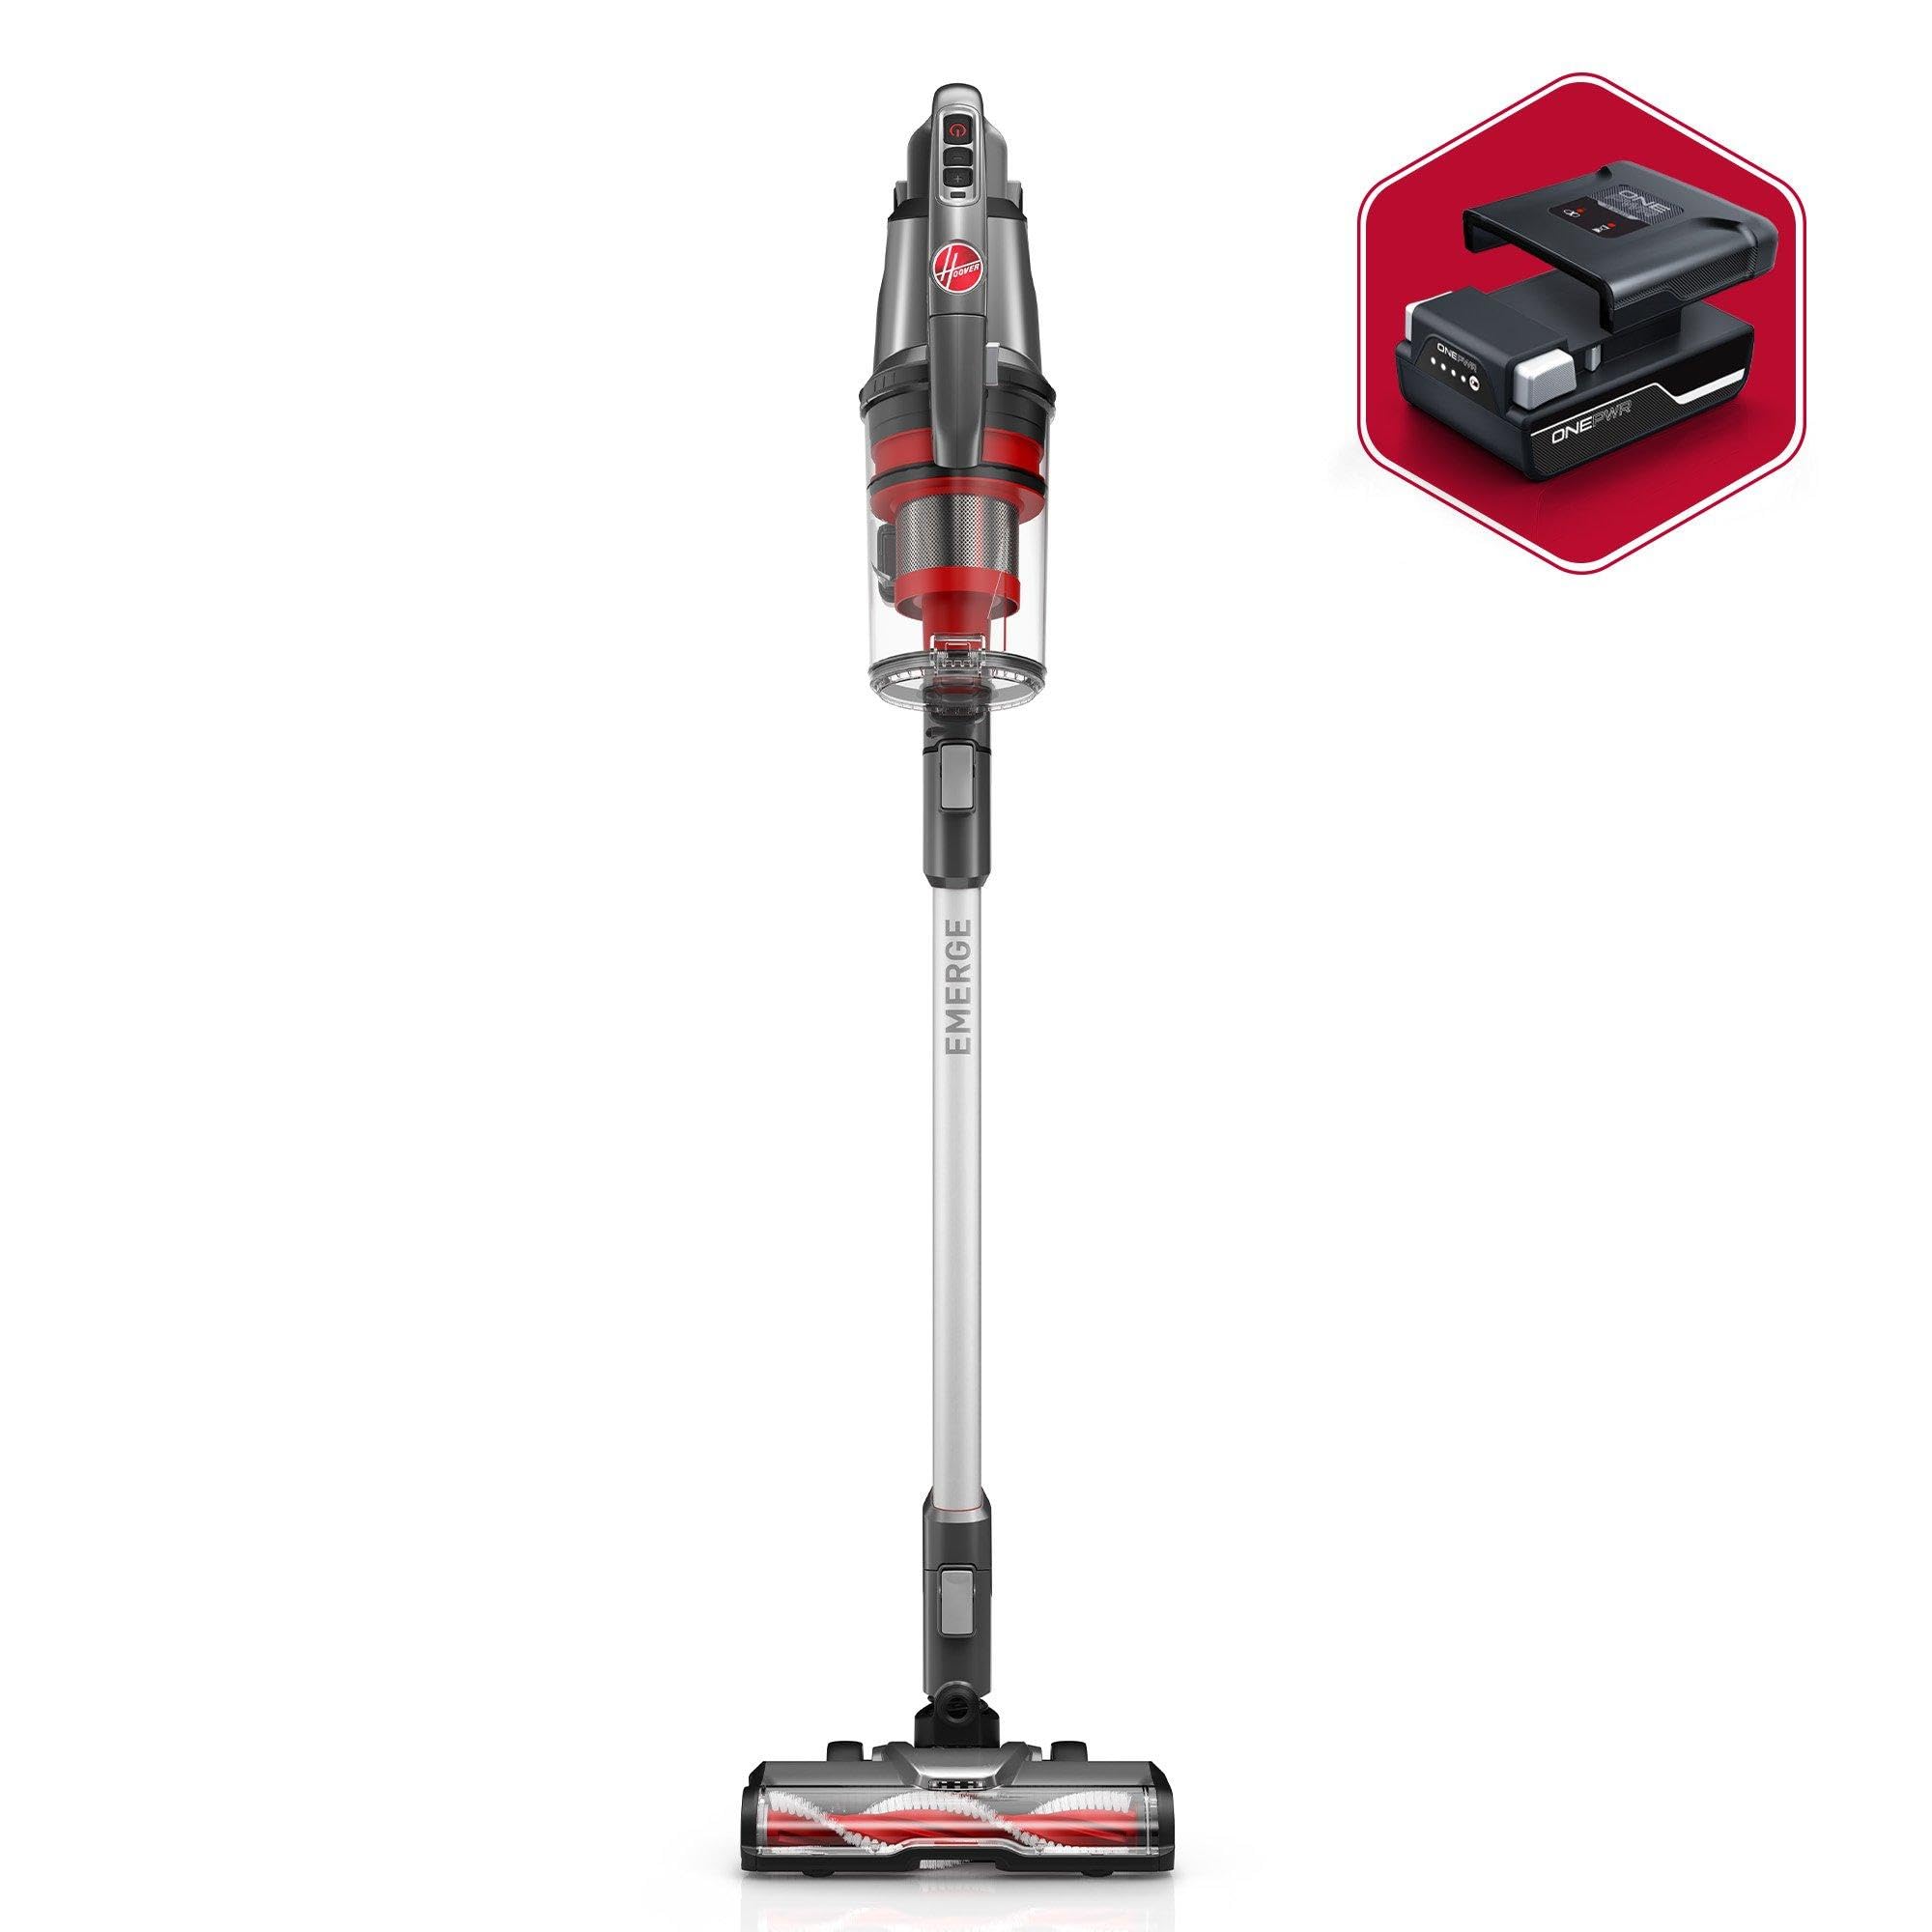 Hoover ONEPWR Emerge Pet Cordless Lightweight Stick Vacuum com bocal de rolo de escova dupla para todo o terreno